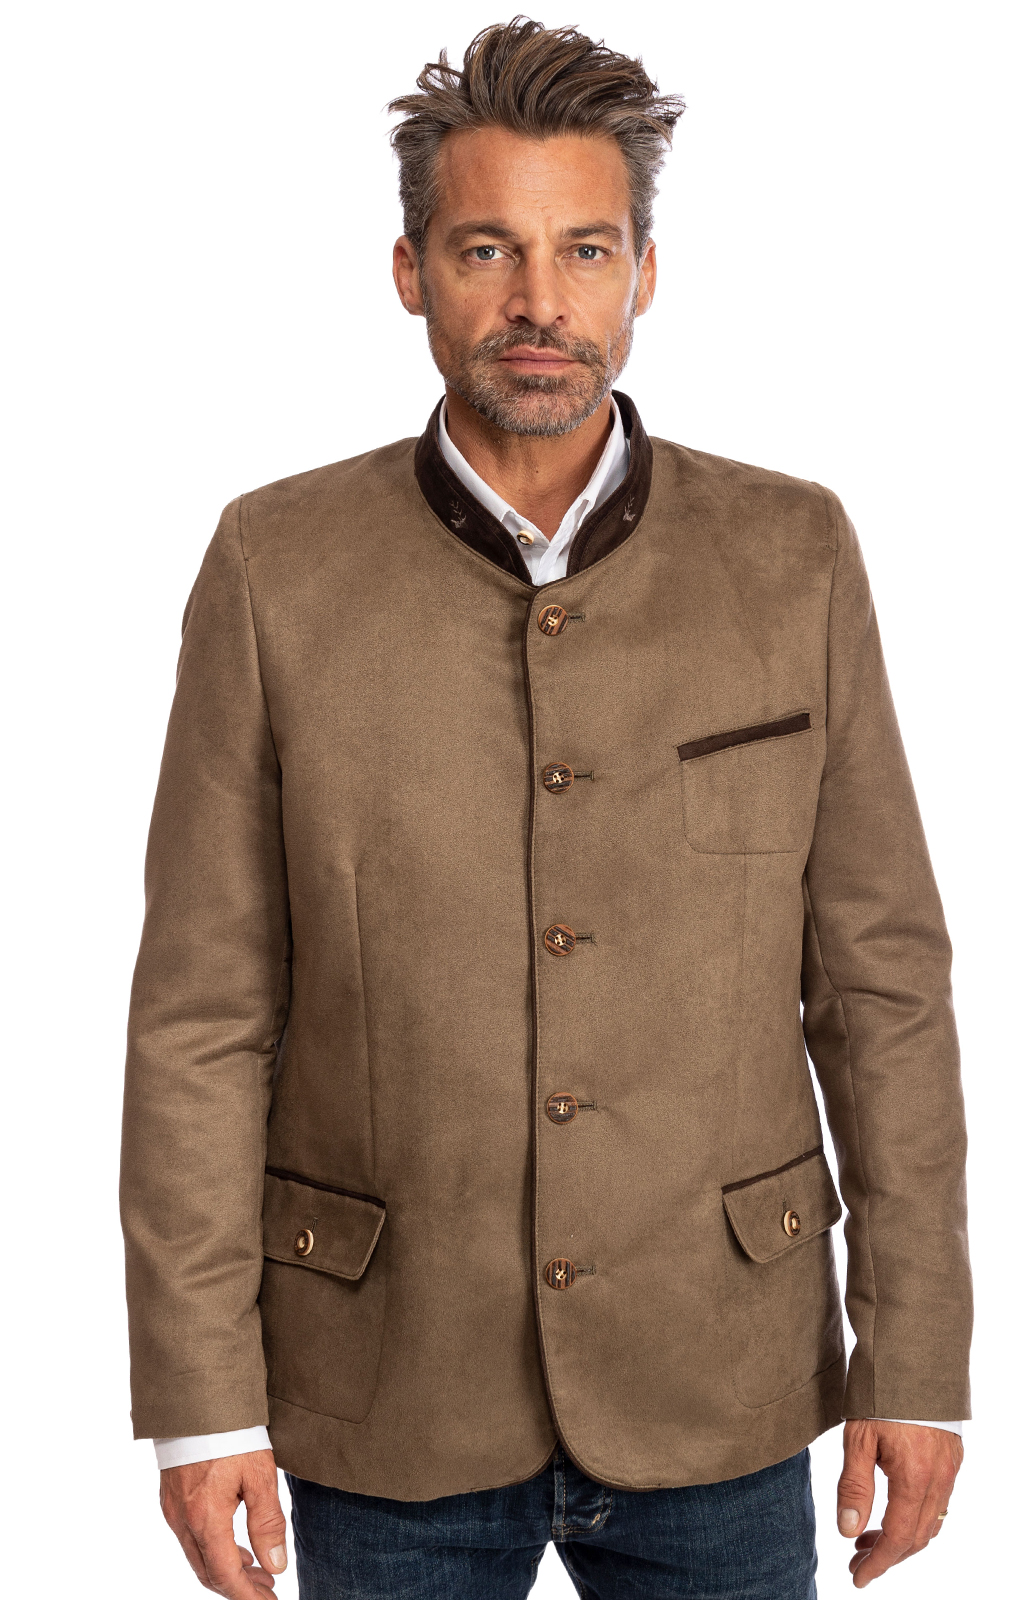 German traditional jacket HOCHEGG brown von OS-Trachten